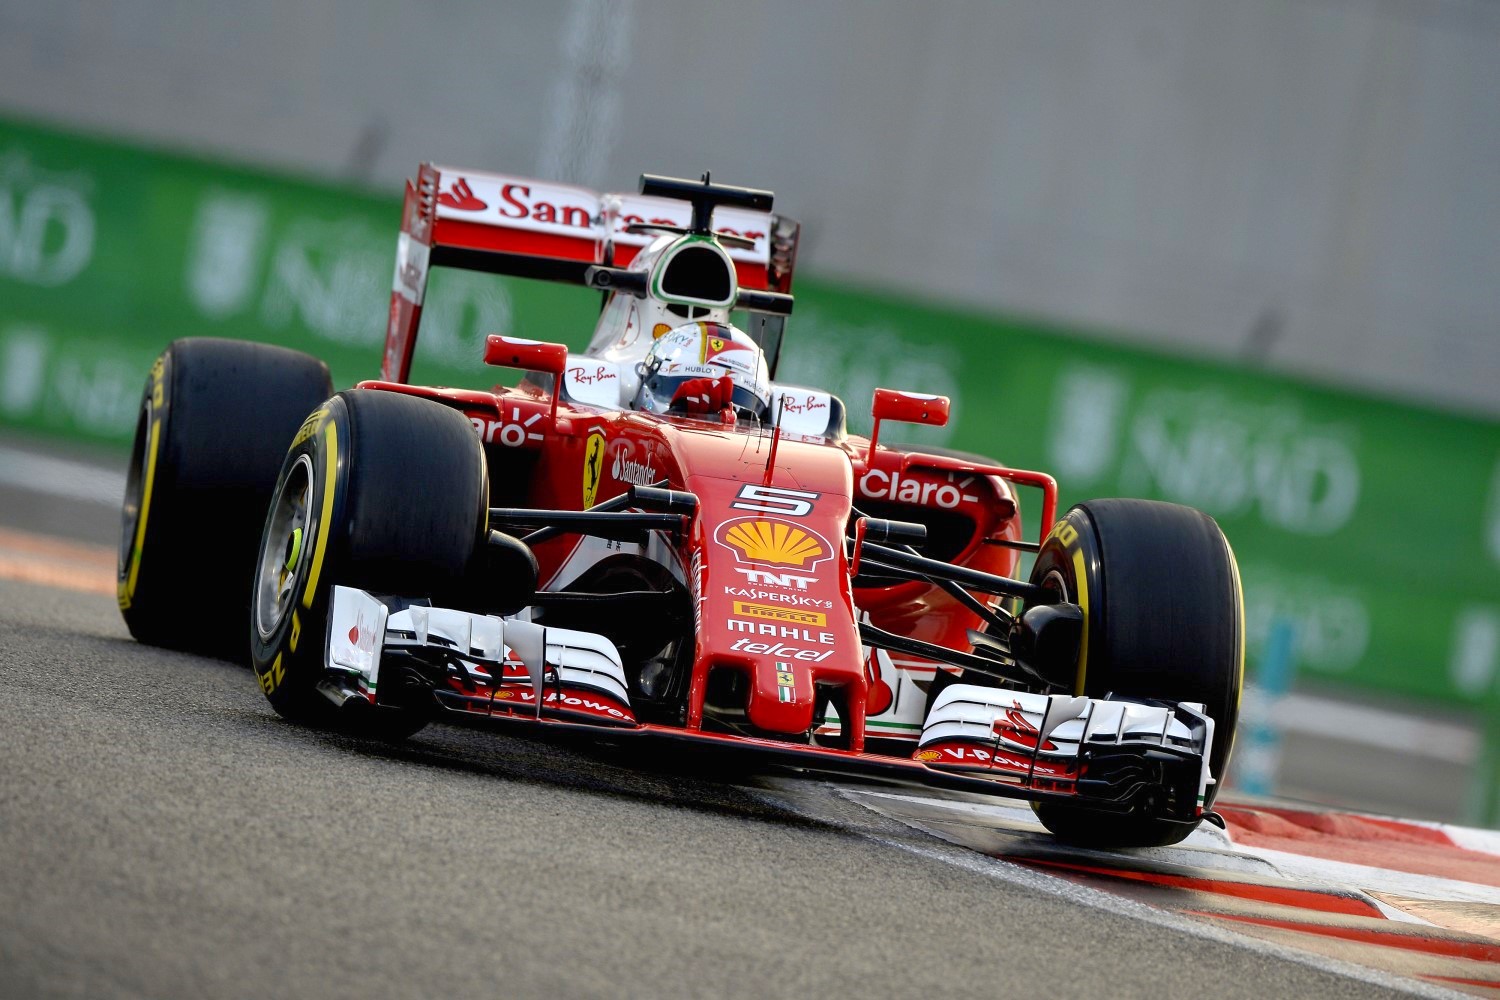 Vettel in the hapless Ferrari